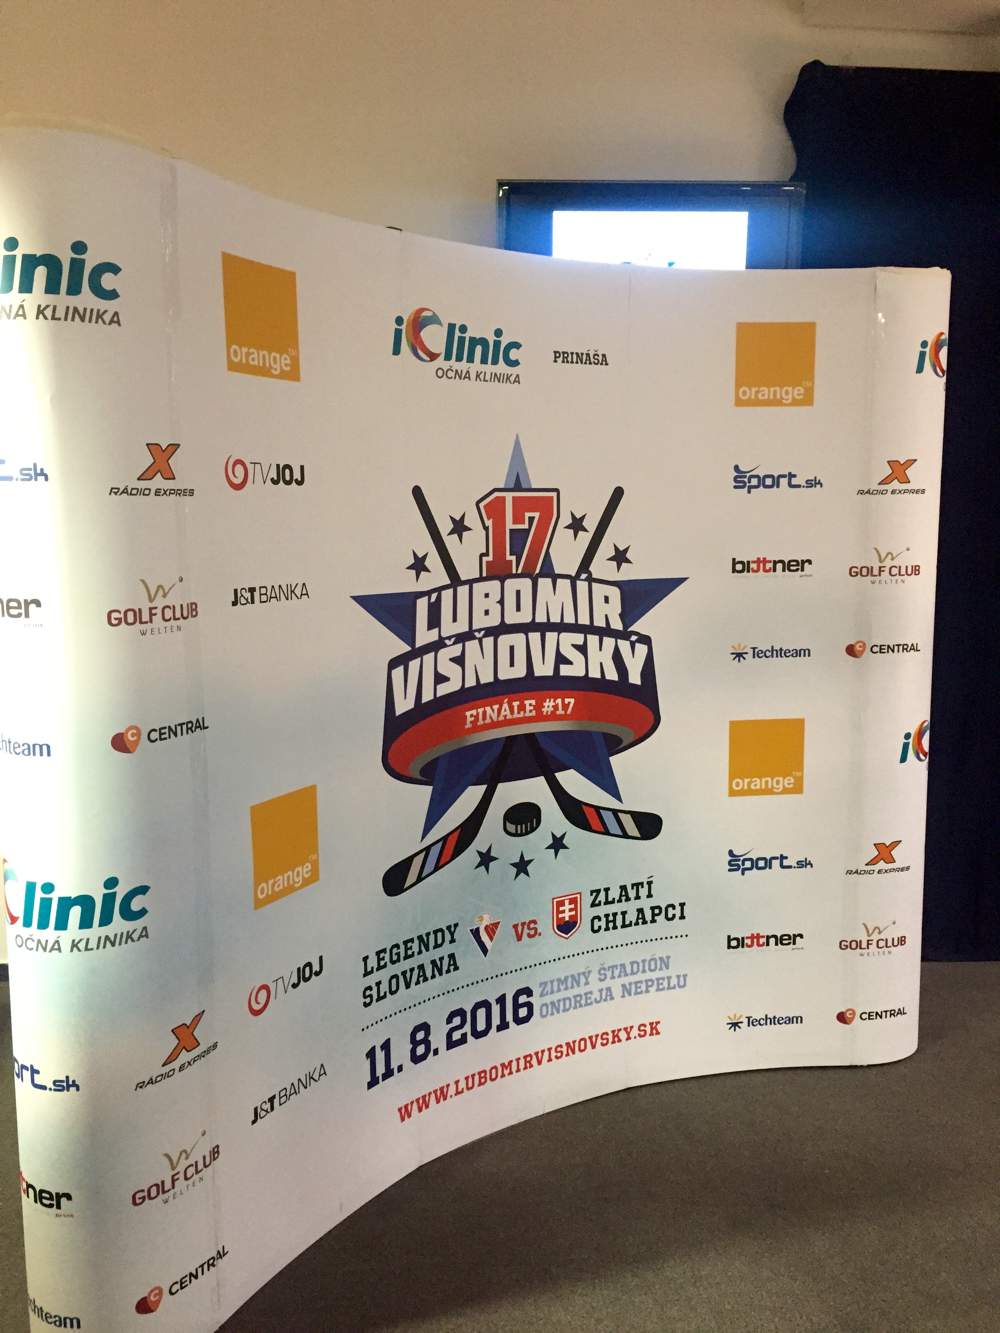 iClinic prináša rozlúčkový charitatívny zápas hokejových hviezd pod záštitou Ľubomíra Višňovského.